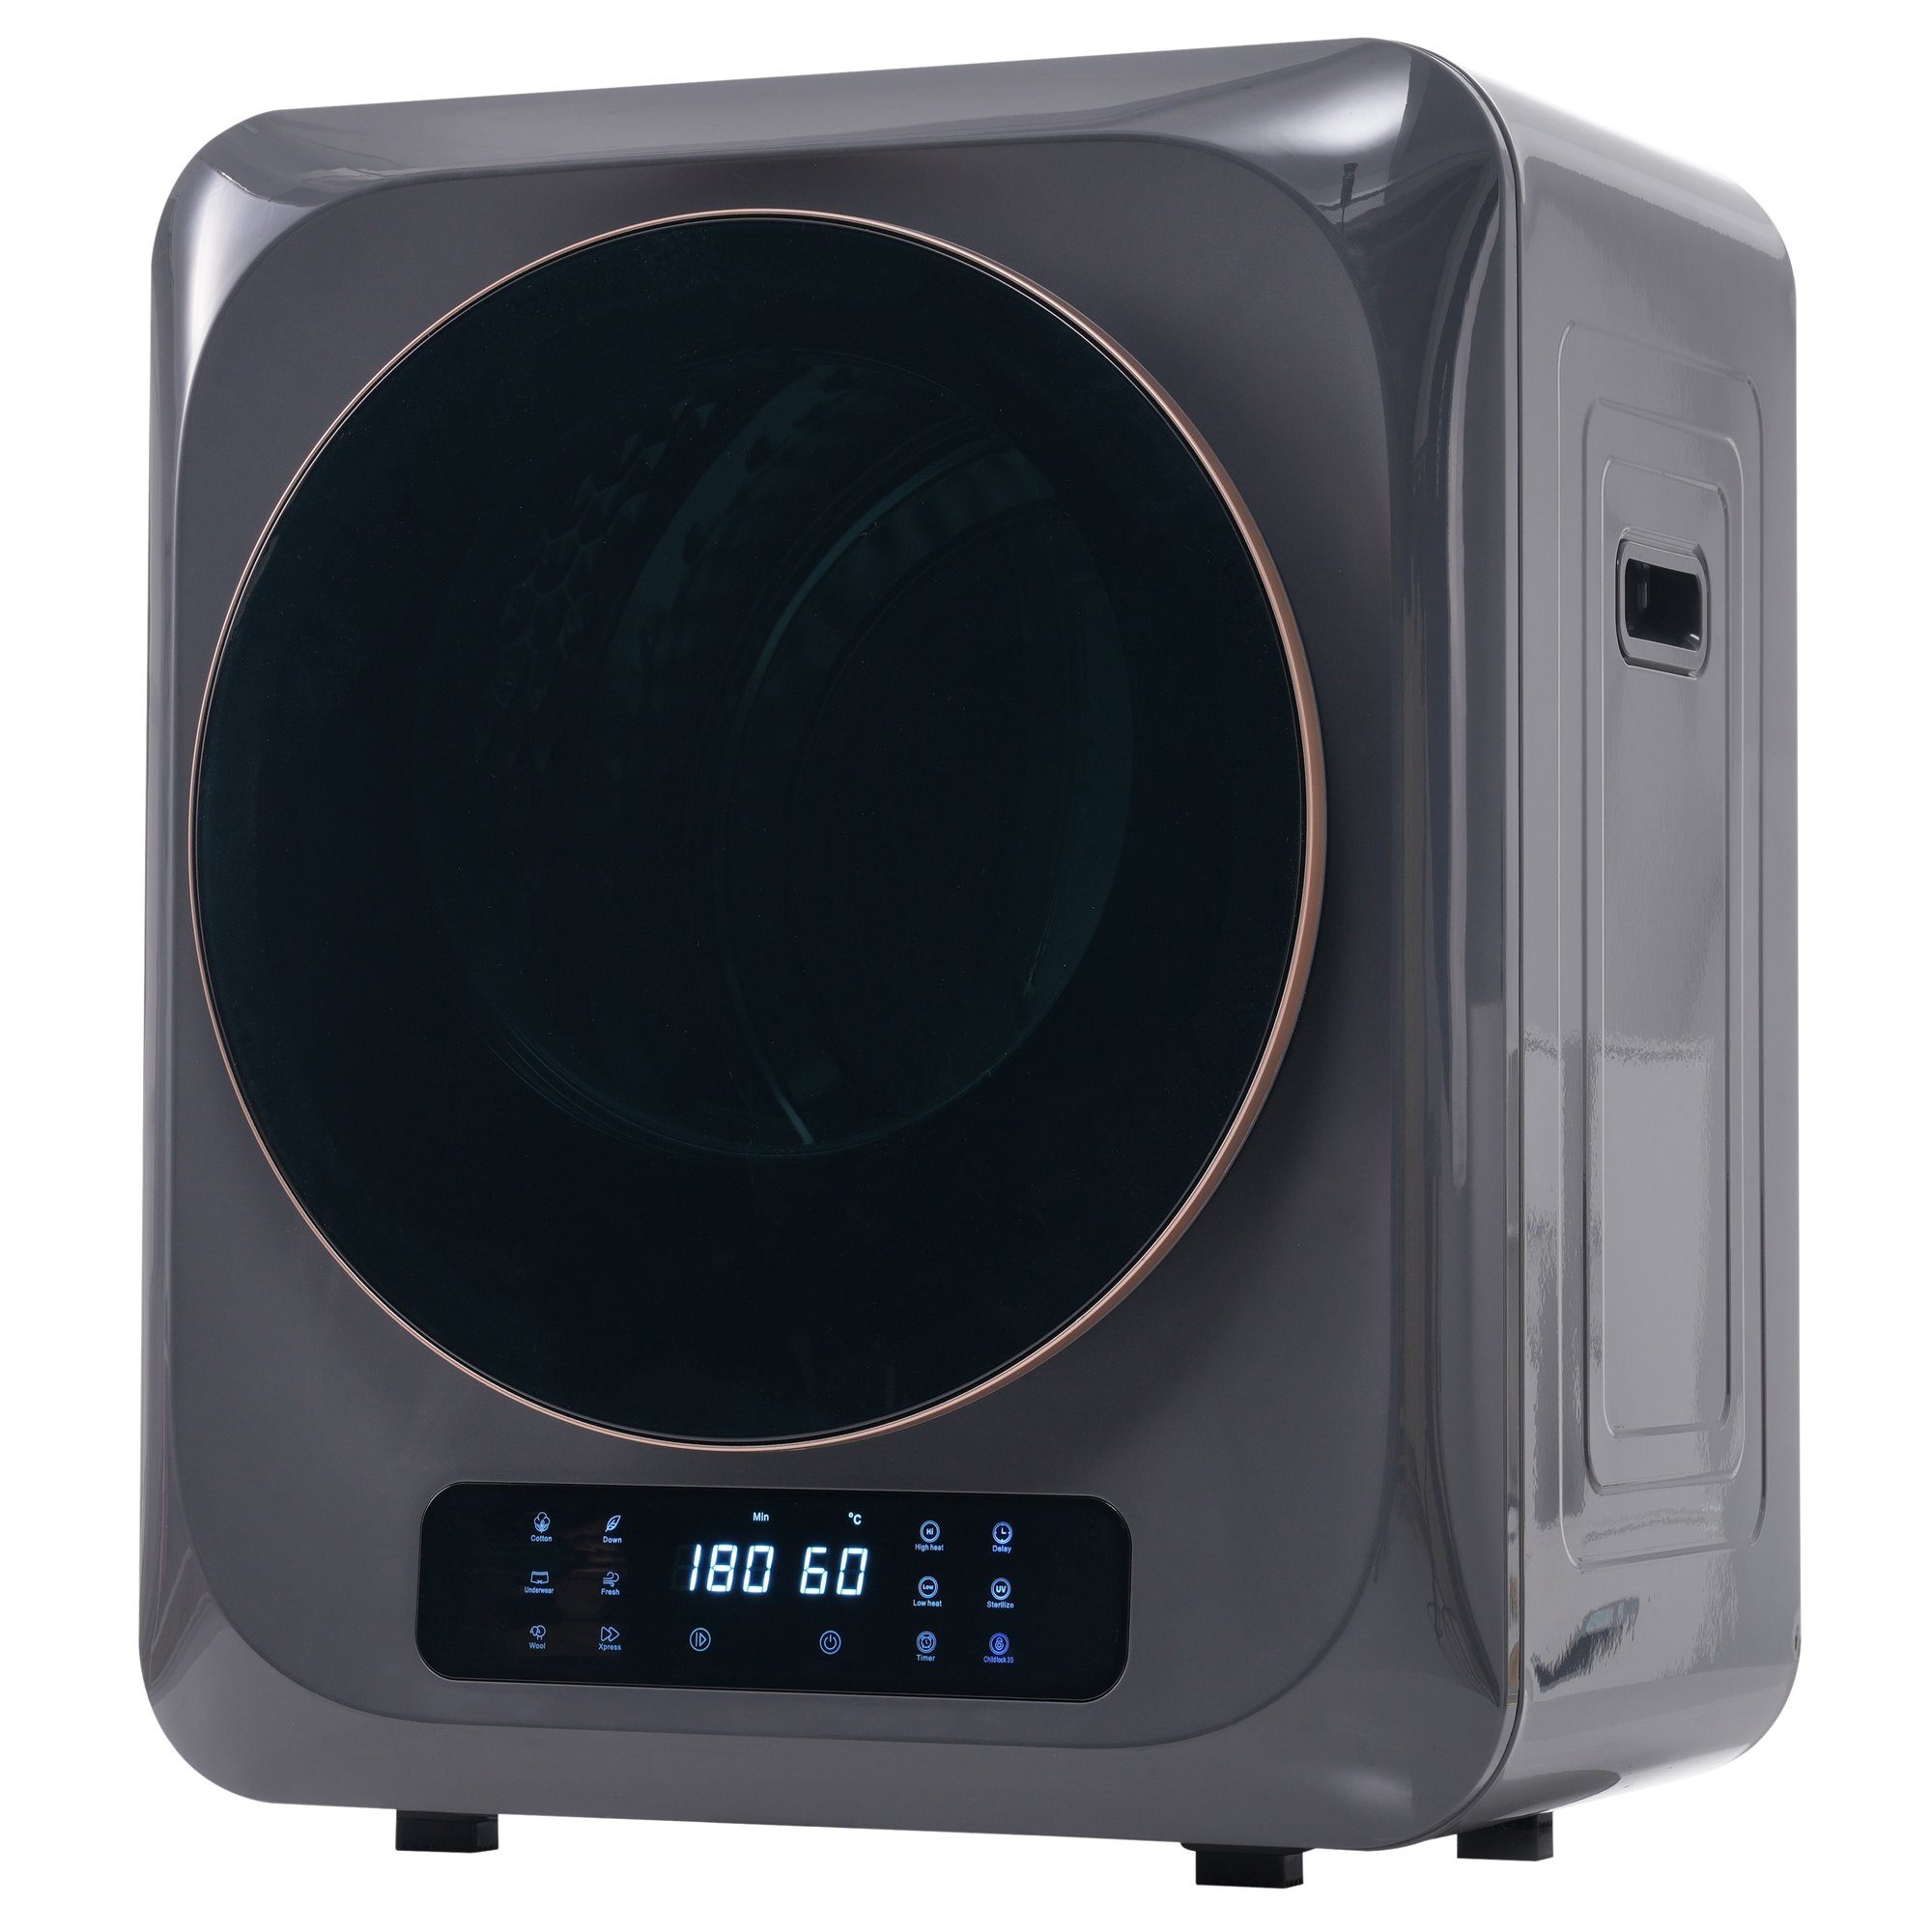 REDOM Ablufttrockner Mini-Wäschetrockner freistehend/hängend Mit UV-Sterilisation und LED-Display, 2.5 kg, Belüfteter Wäschetrockner mit Timer und 6 Programme Grau